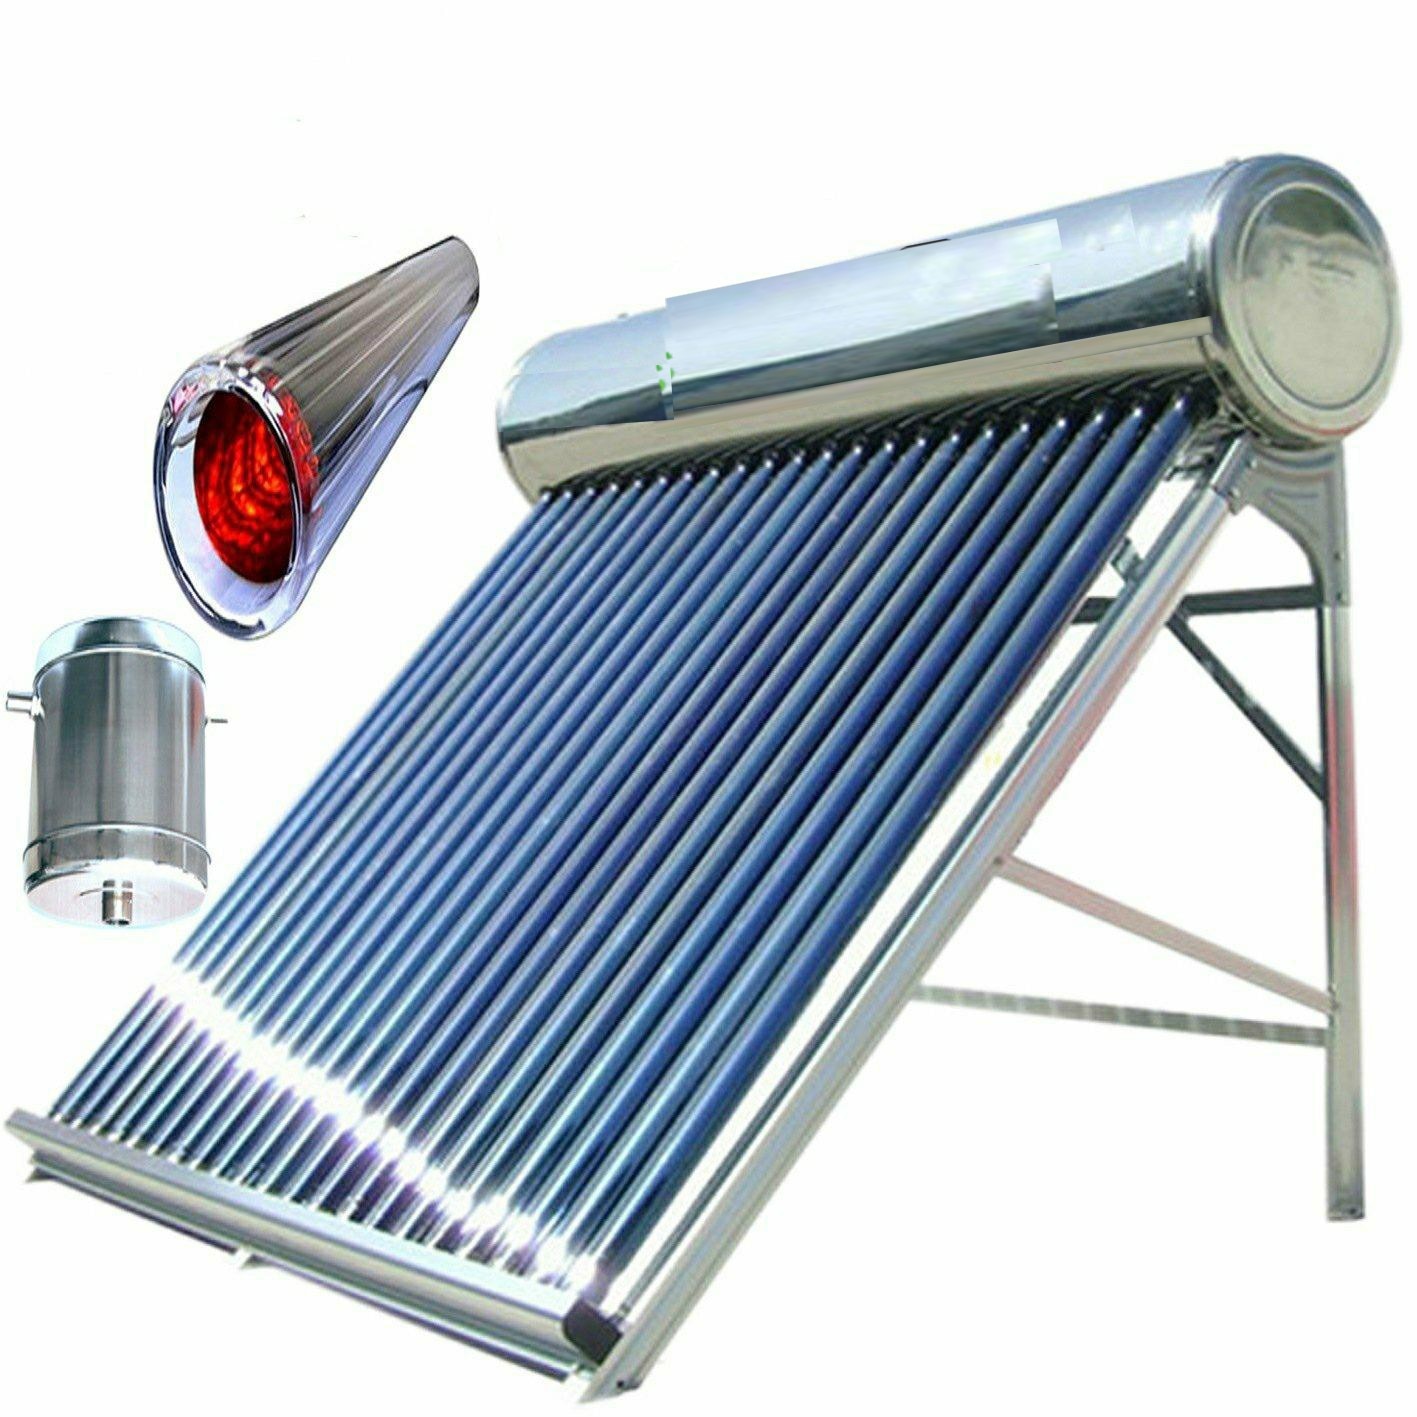 Отопление круглый год. Солнечные водонагреватель (Солнечный гелиоколлектор). Солнечный водонагреватель 200л. Солнечный водонагреватель Royal 200 л. Вакуумный трубчатый Солнечный коллектор (SHC).